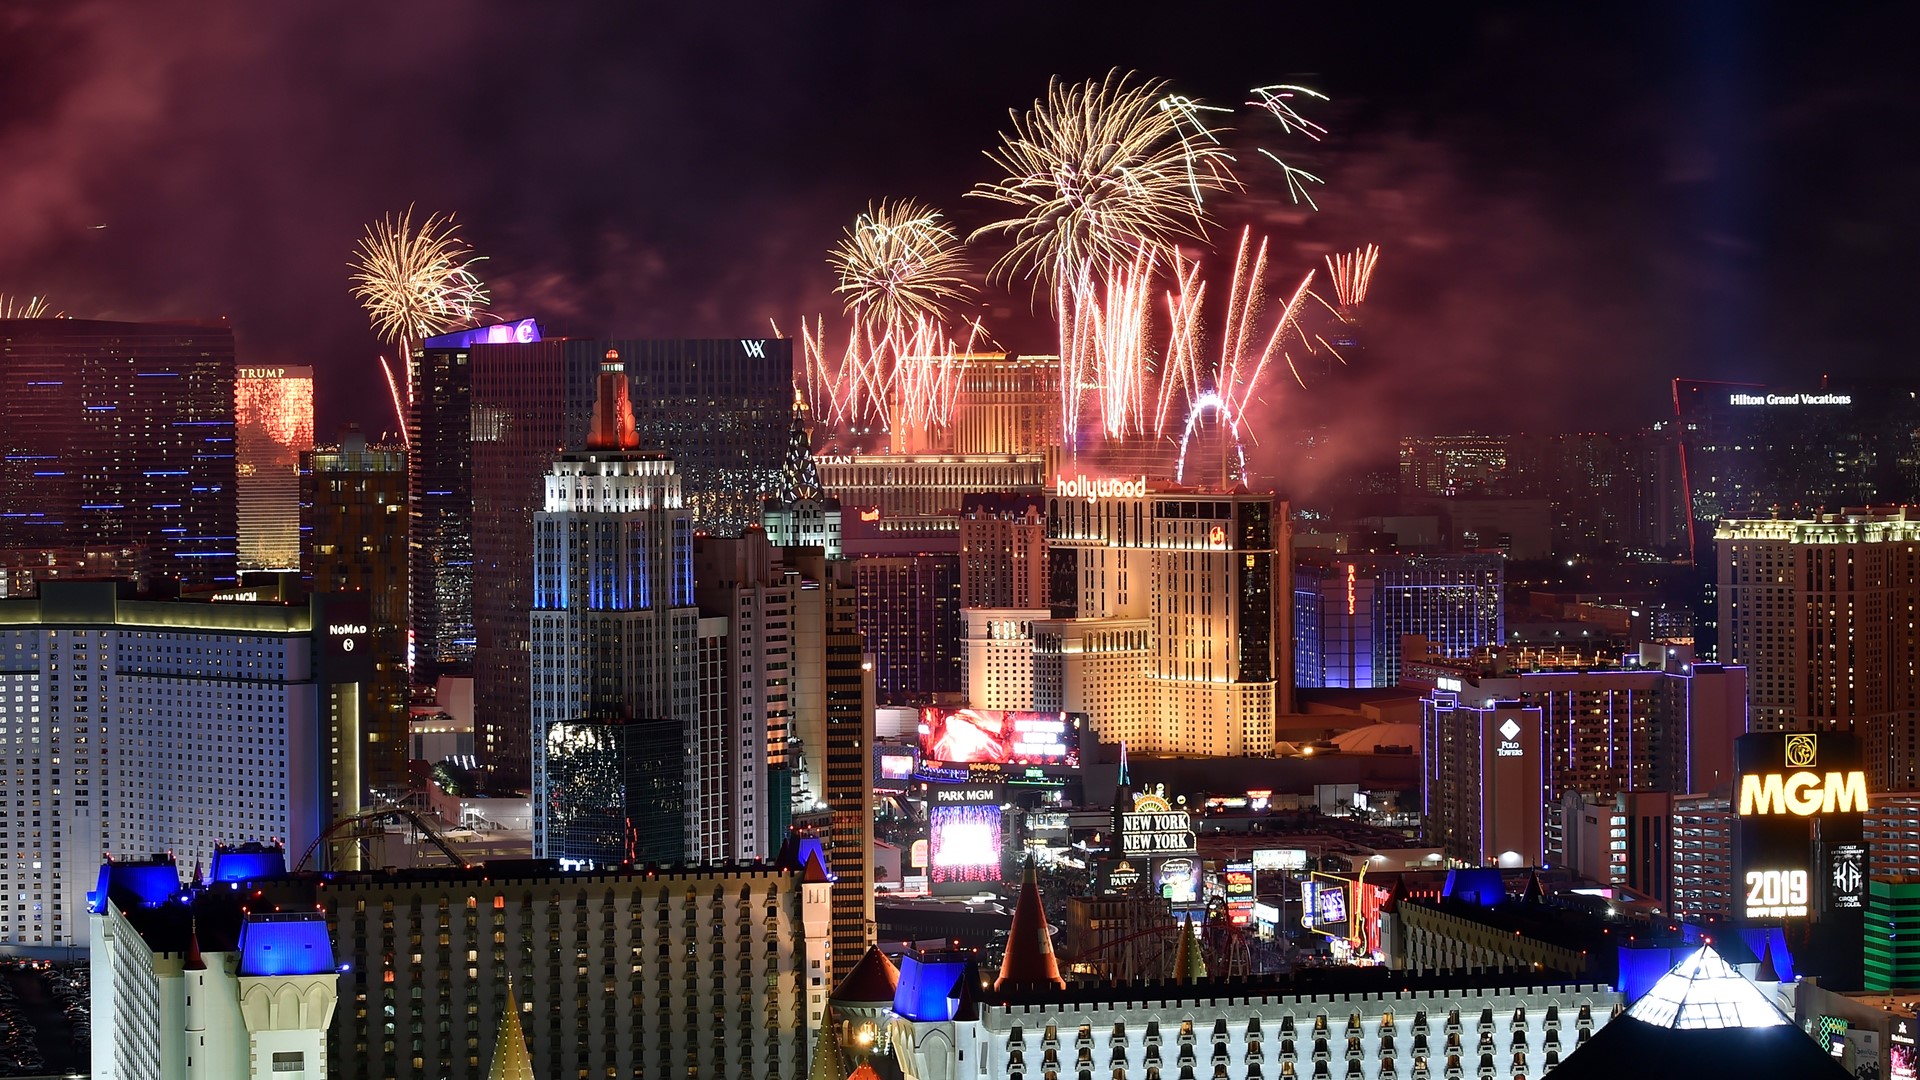 Las Vegas welcomes 2019